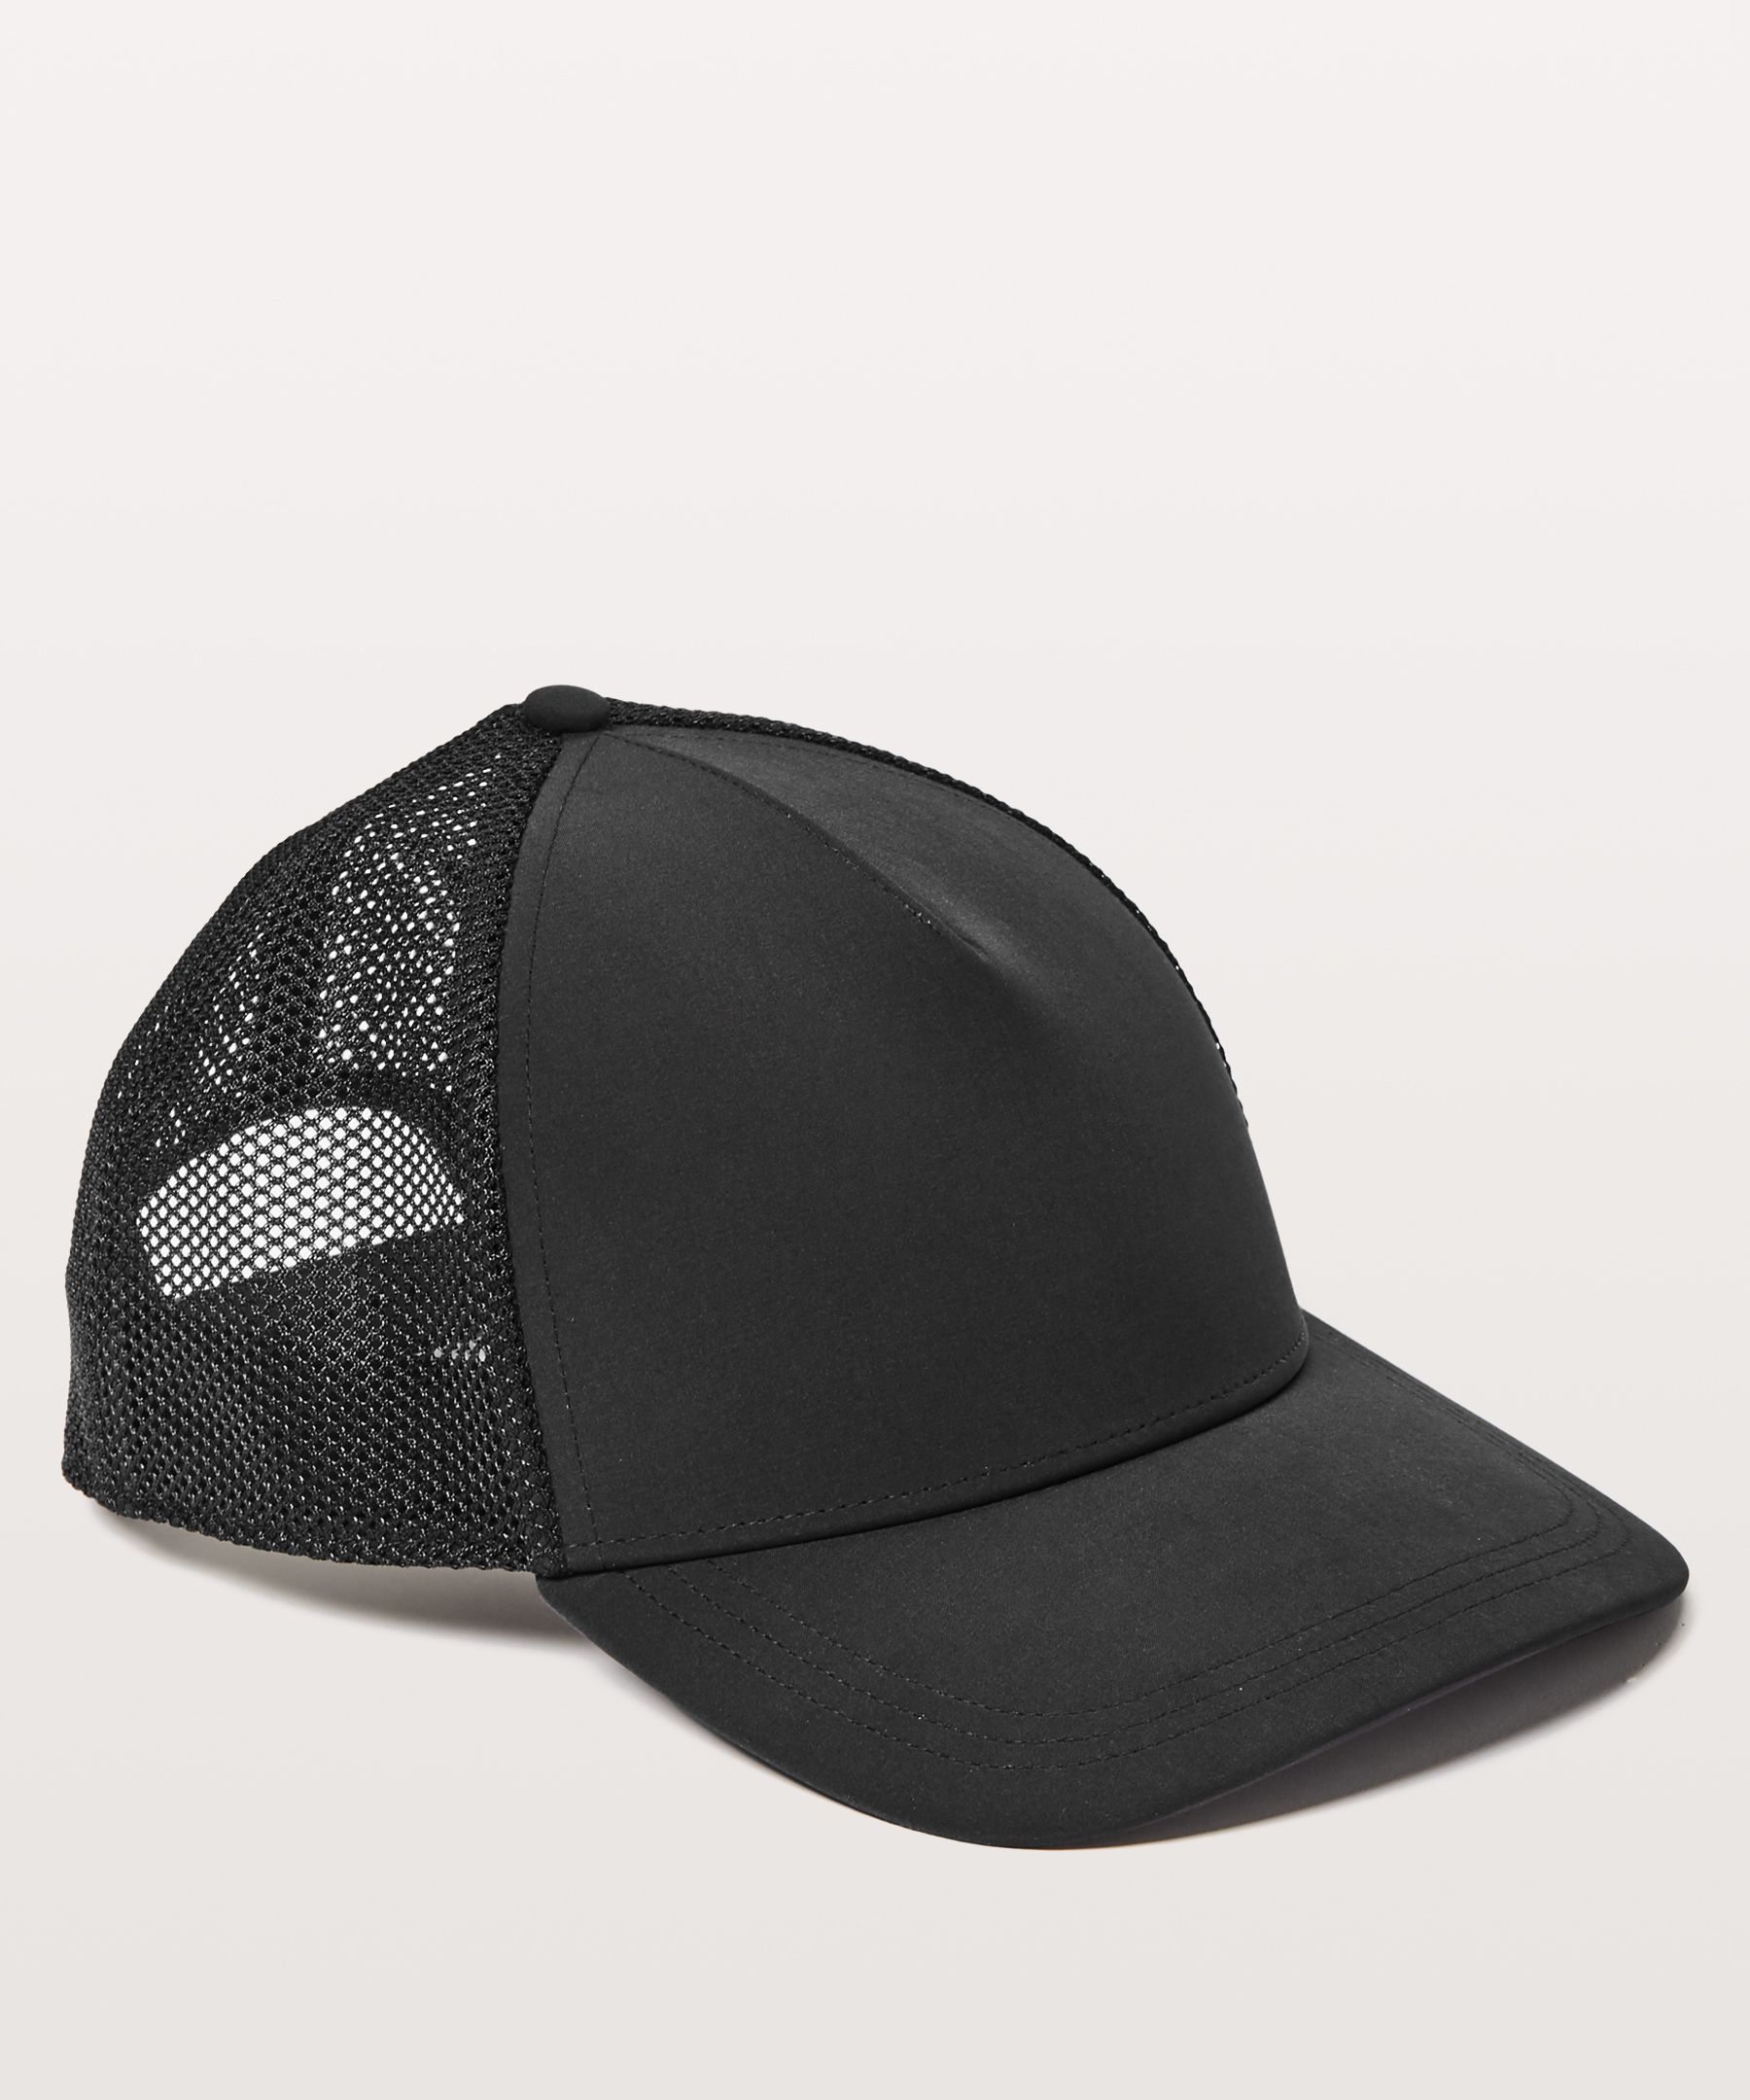 Commission Hat | Commission Shop 